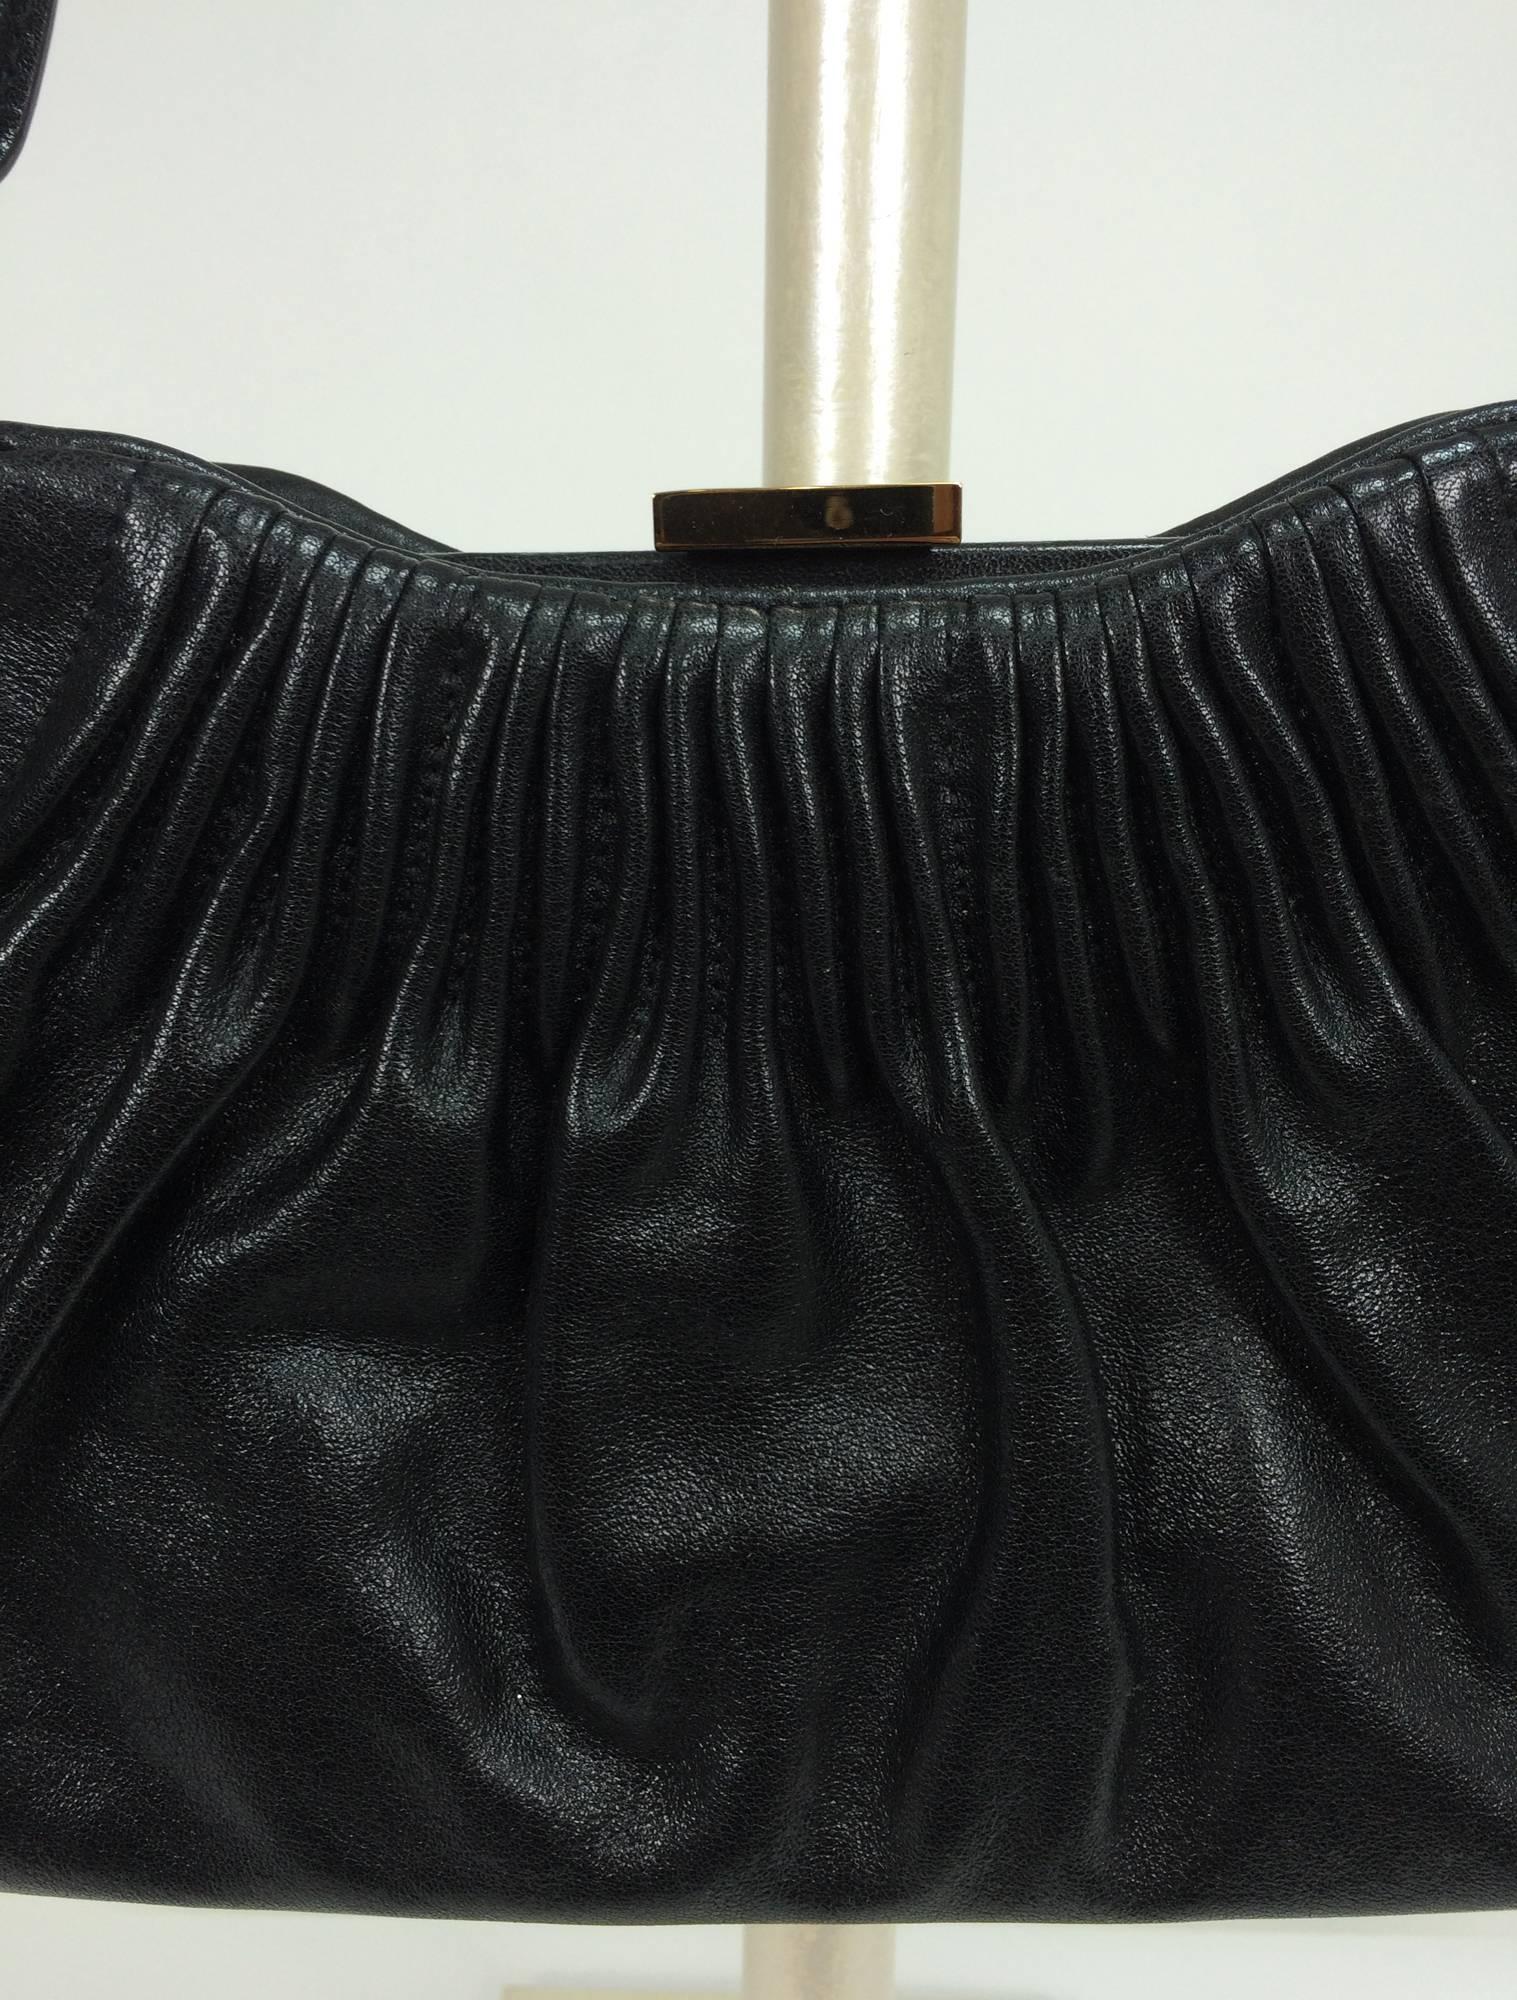 Black Escada black leather frame bag convertible clutch or shoulder handbag